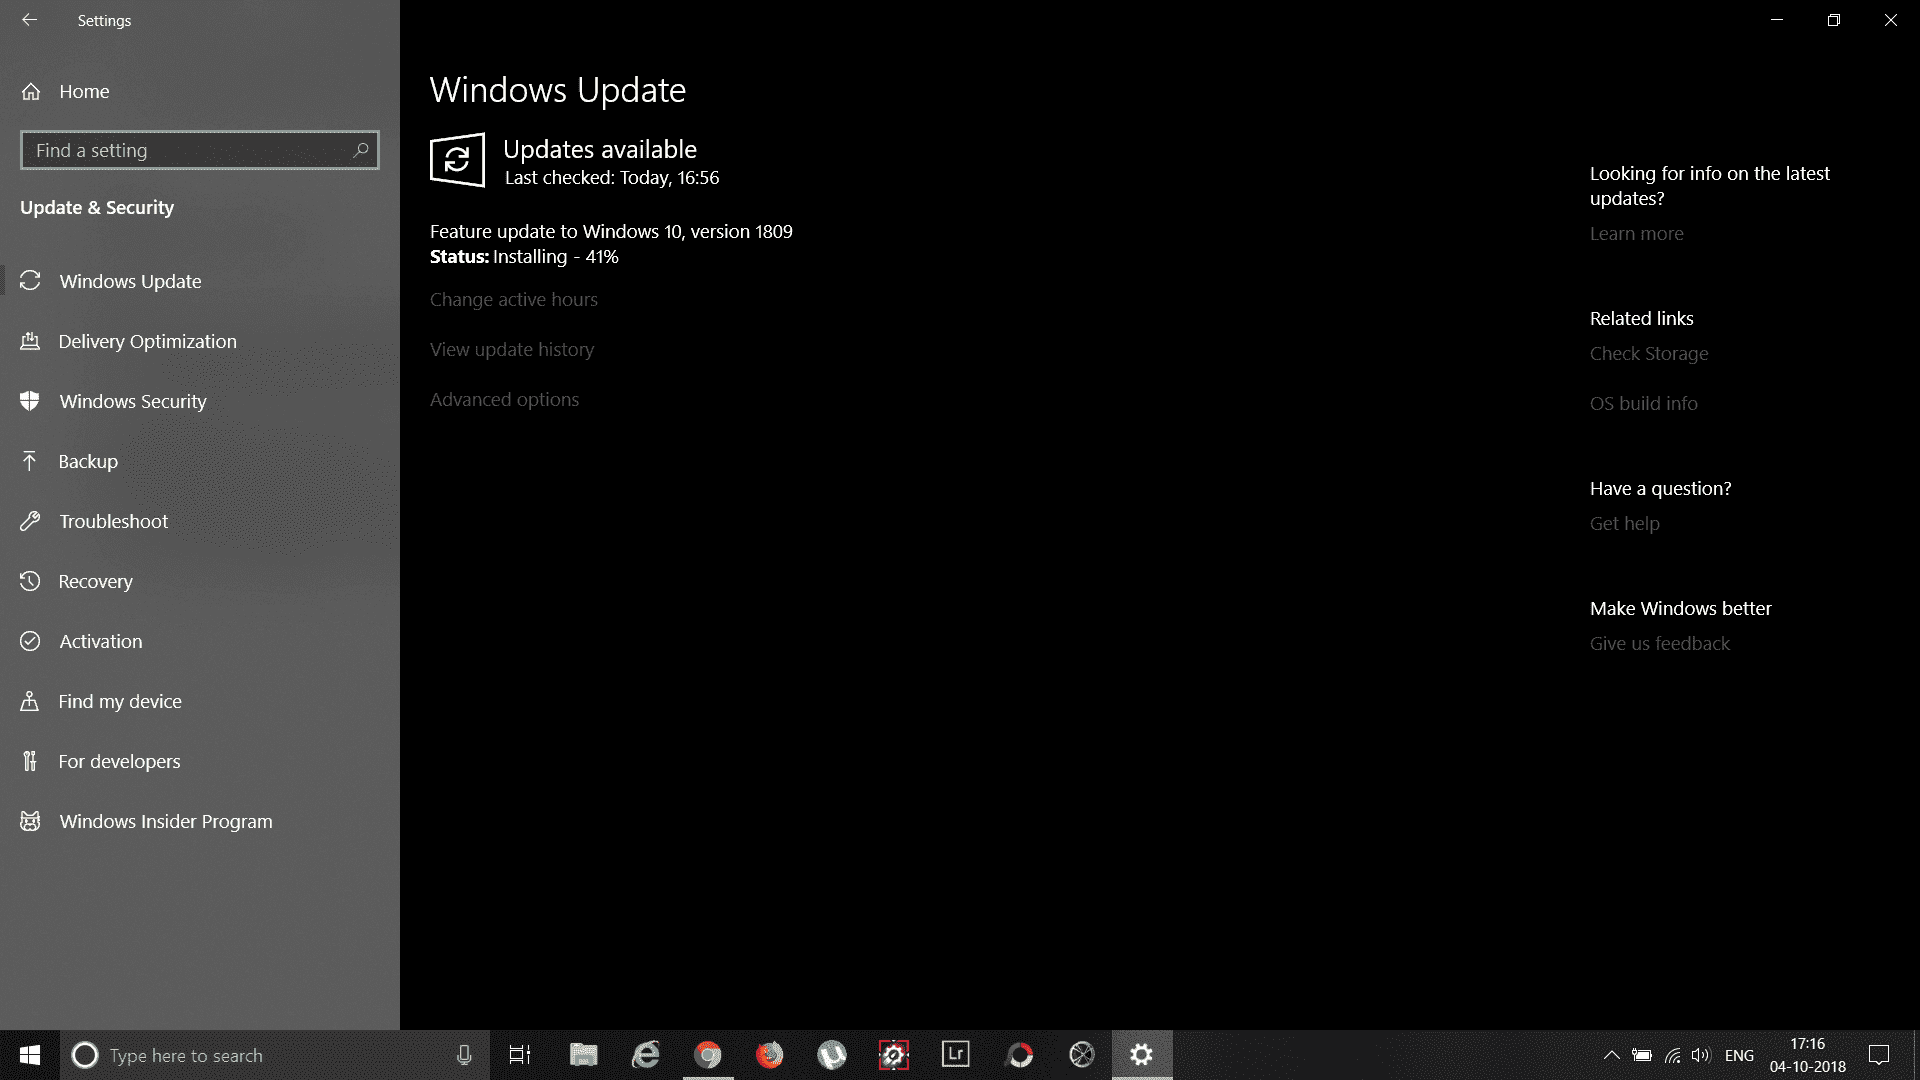 Windows 10 Update 1809 1c3183a3-0d4b-41ce-aeb8-e9cddd568978?upload=true.png